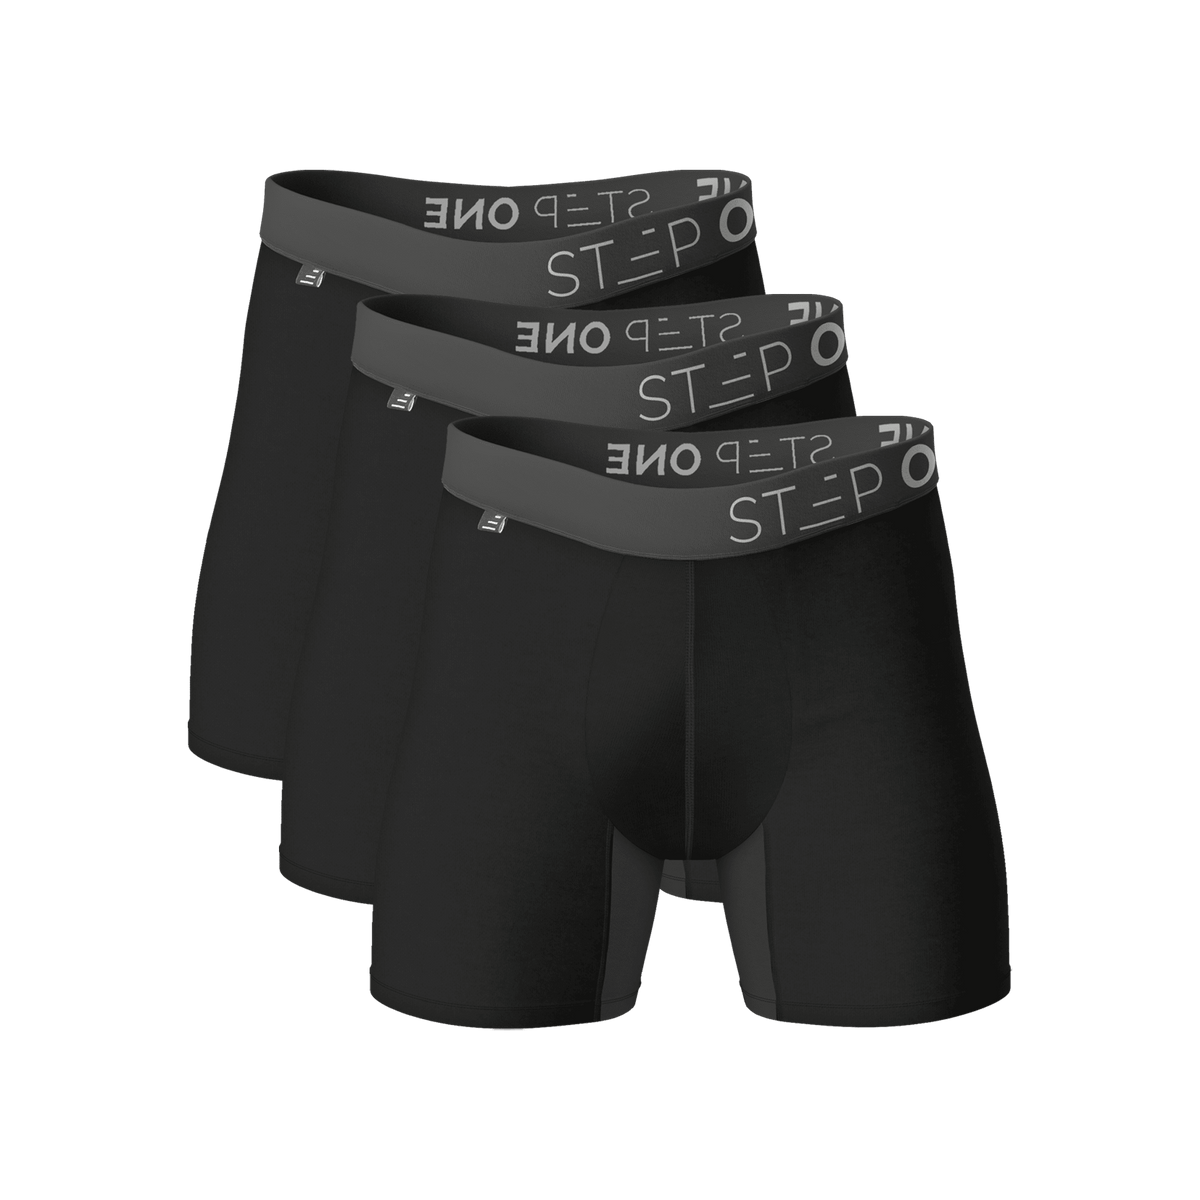 Boxer Brief - 3 Pack - Black Currants | Step One Underwear